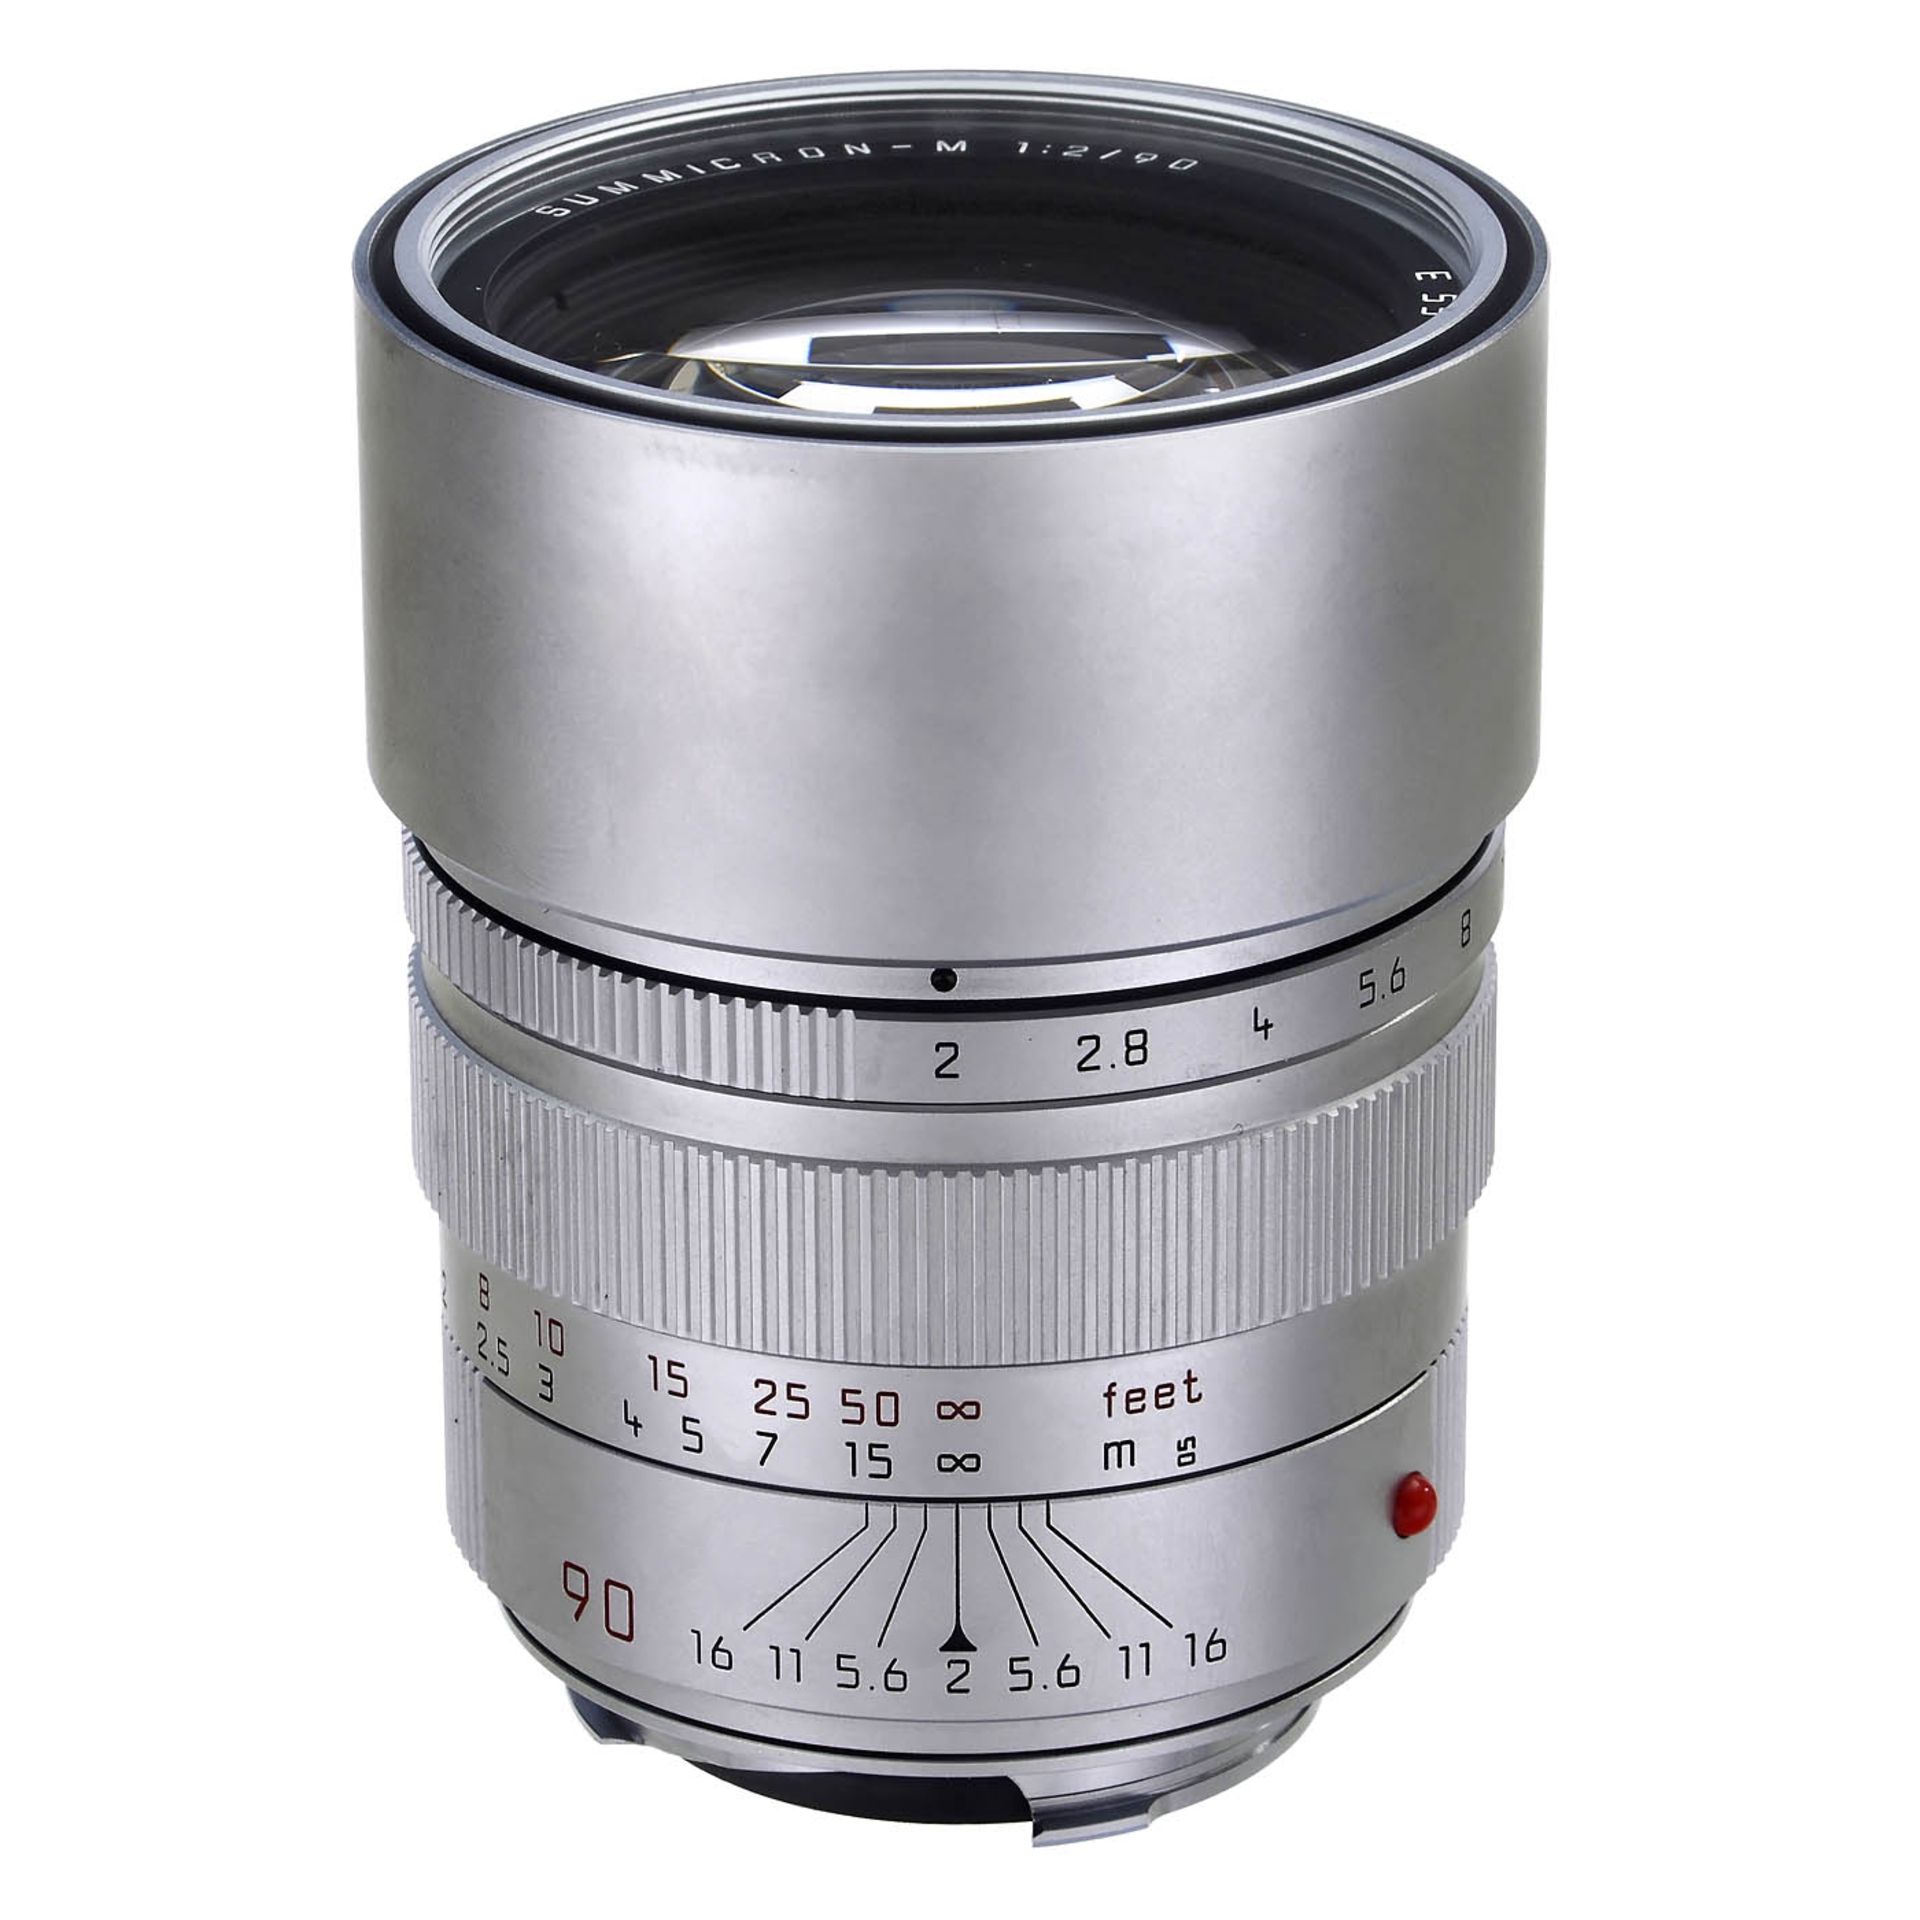 Leica Summicron-M 2/90 mm, um 1995 Leica Camera, Canada. Nr. 3703817. Silbern verchromte Ausführung.